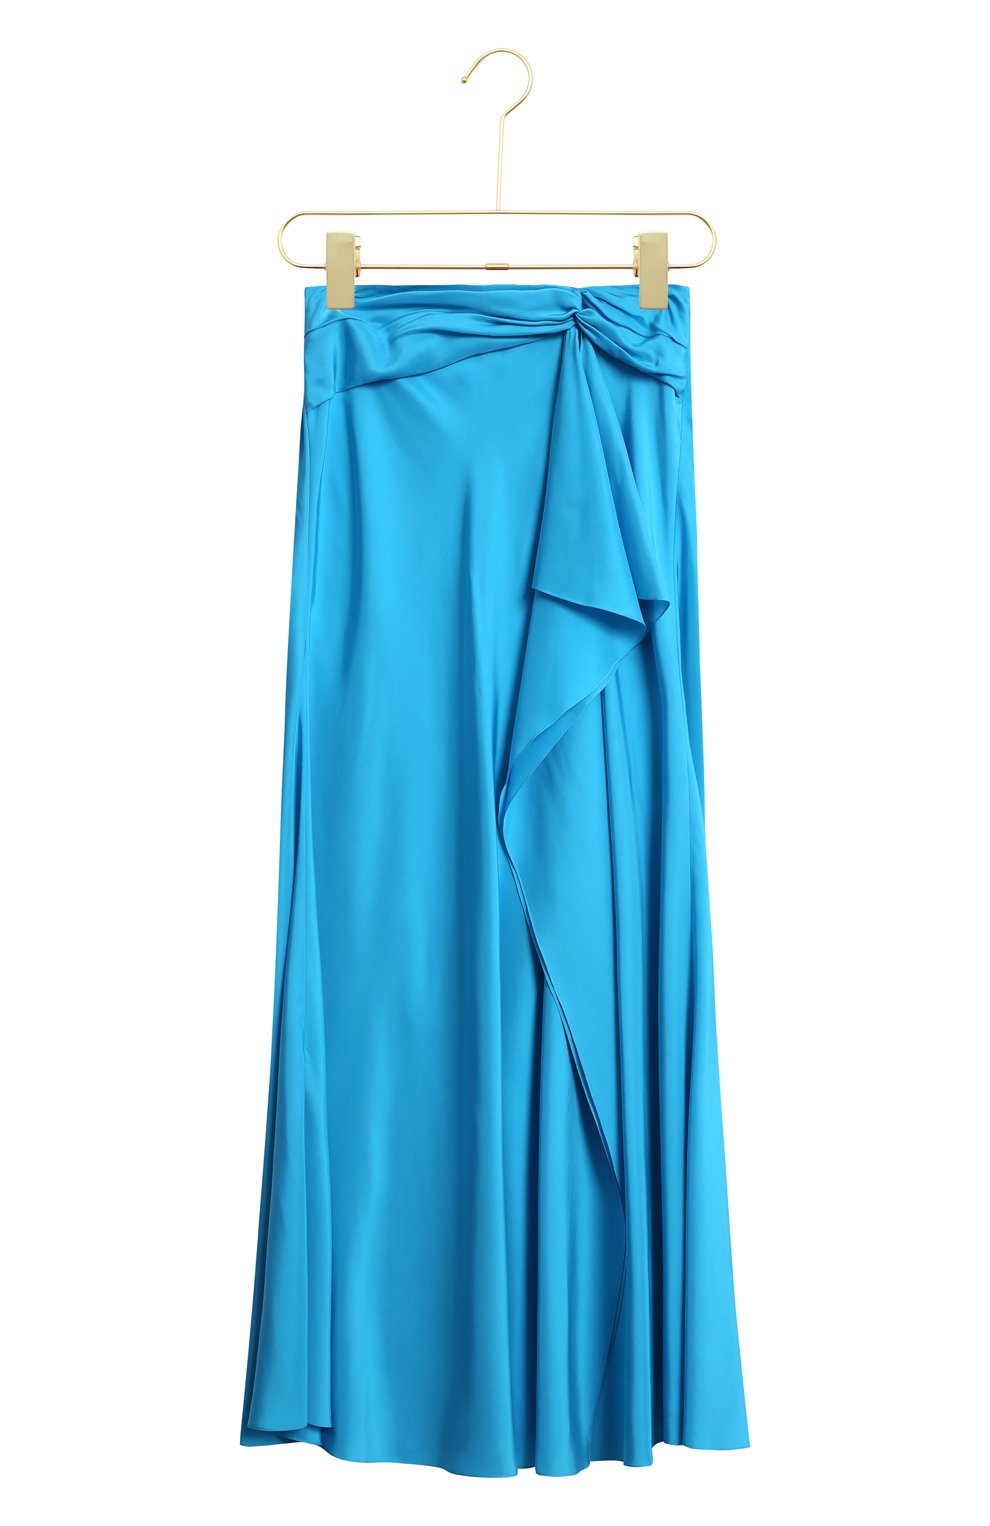 Шелковая юбка | Ralph Lauren | Голубой - 1